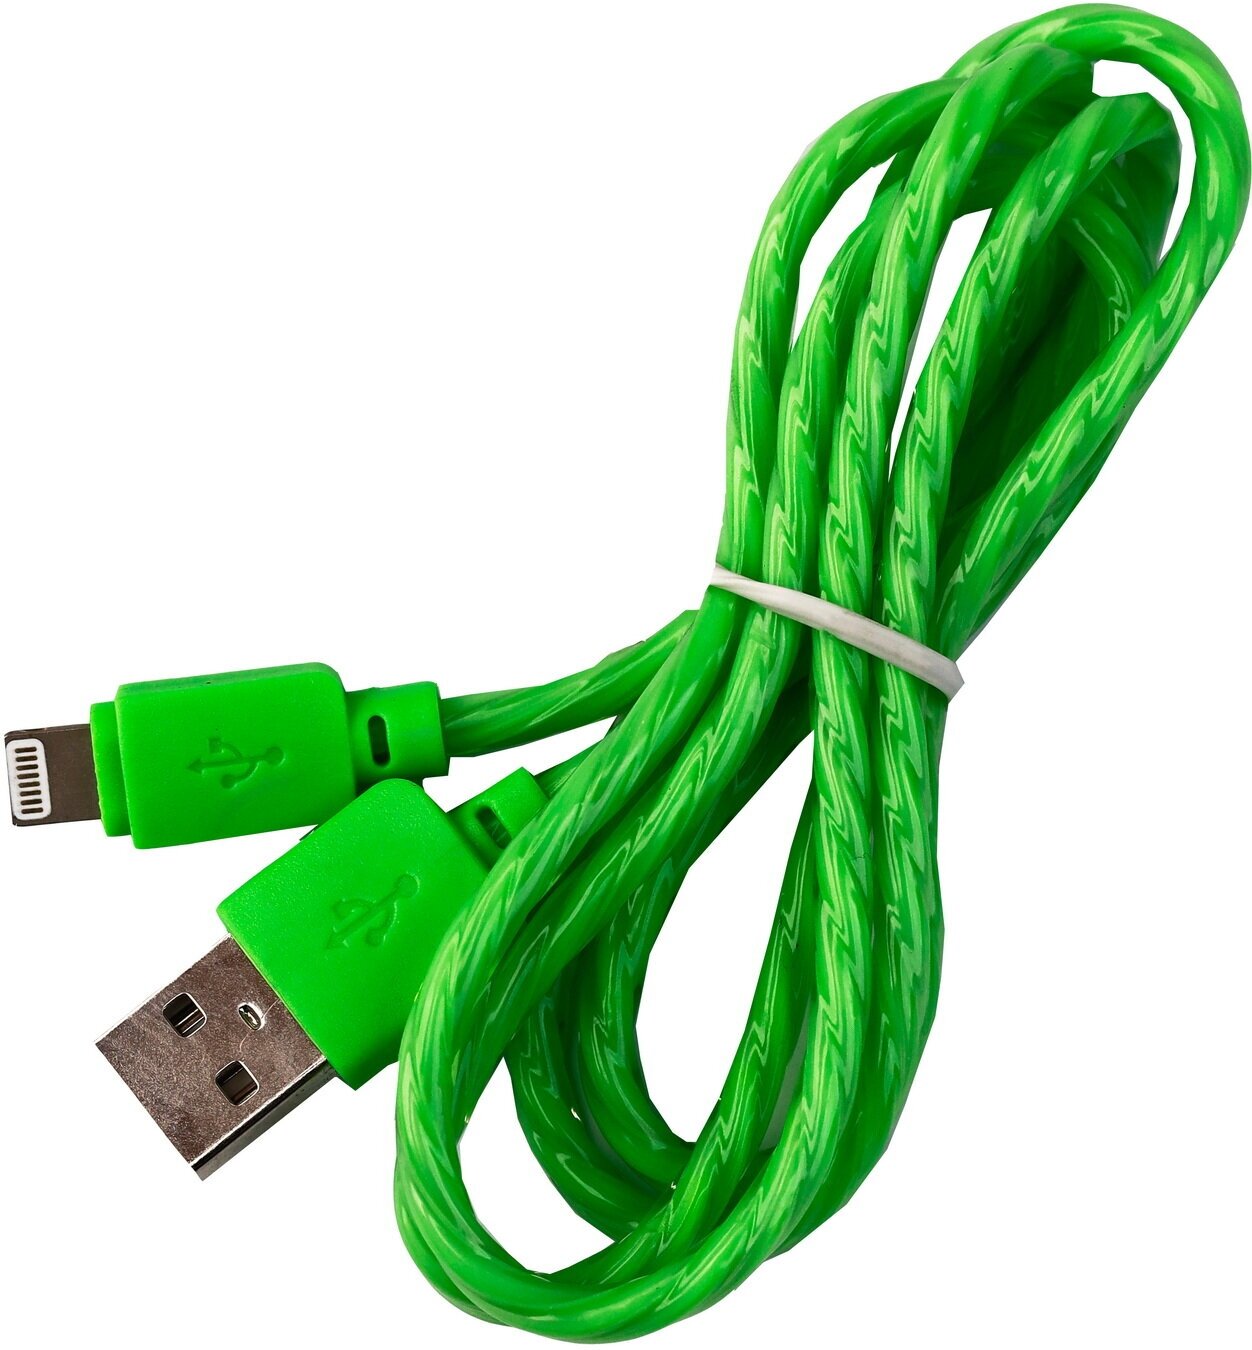 Дата-кабель SmartBuy 8pin SILICONE SPIRAL, зеленый, 2 А, 1 м